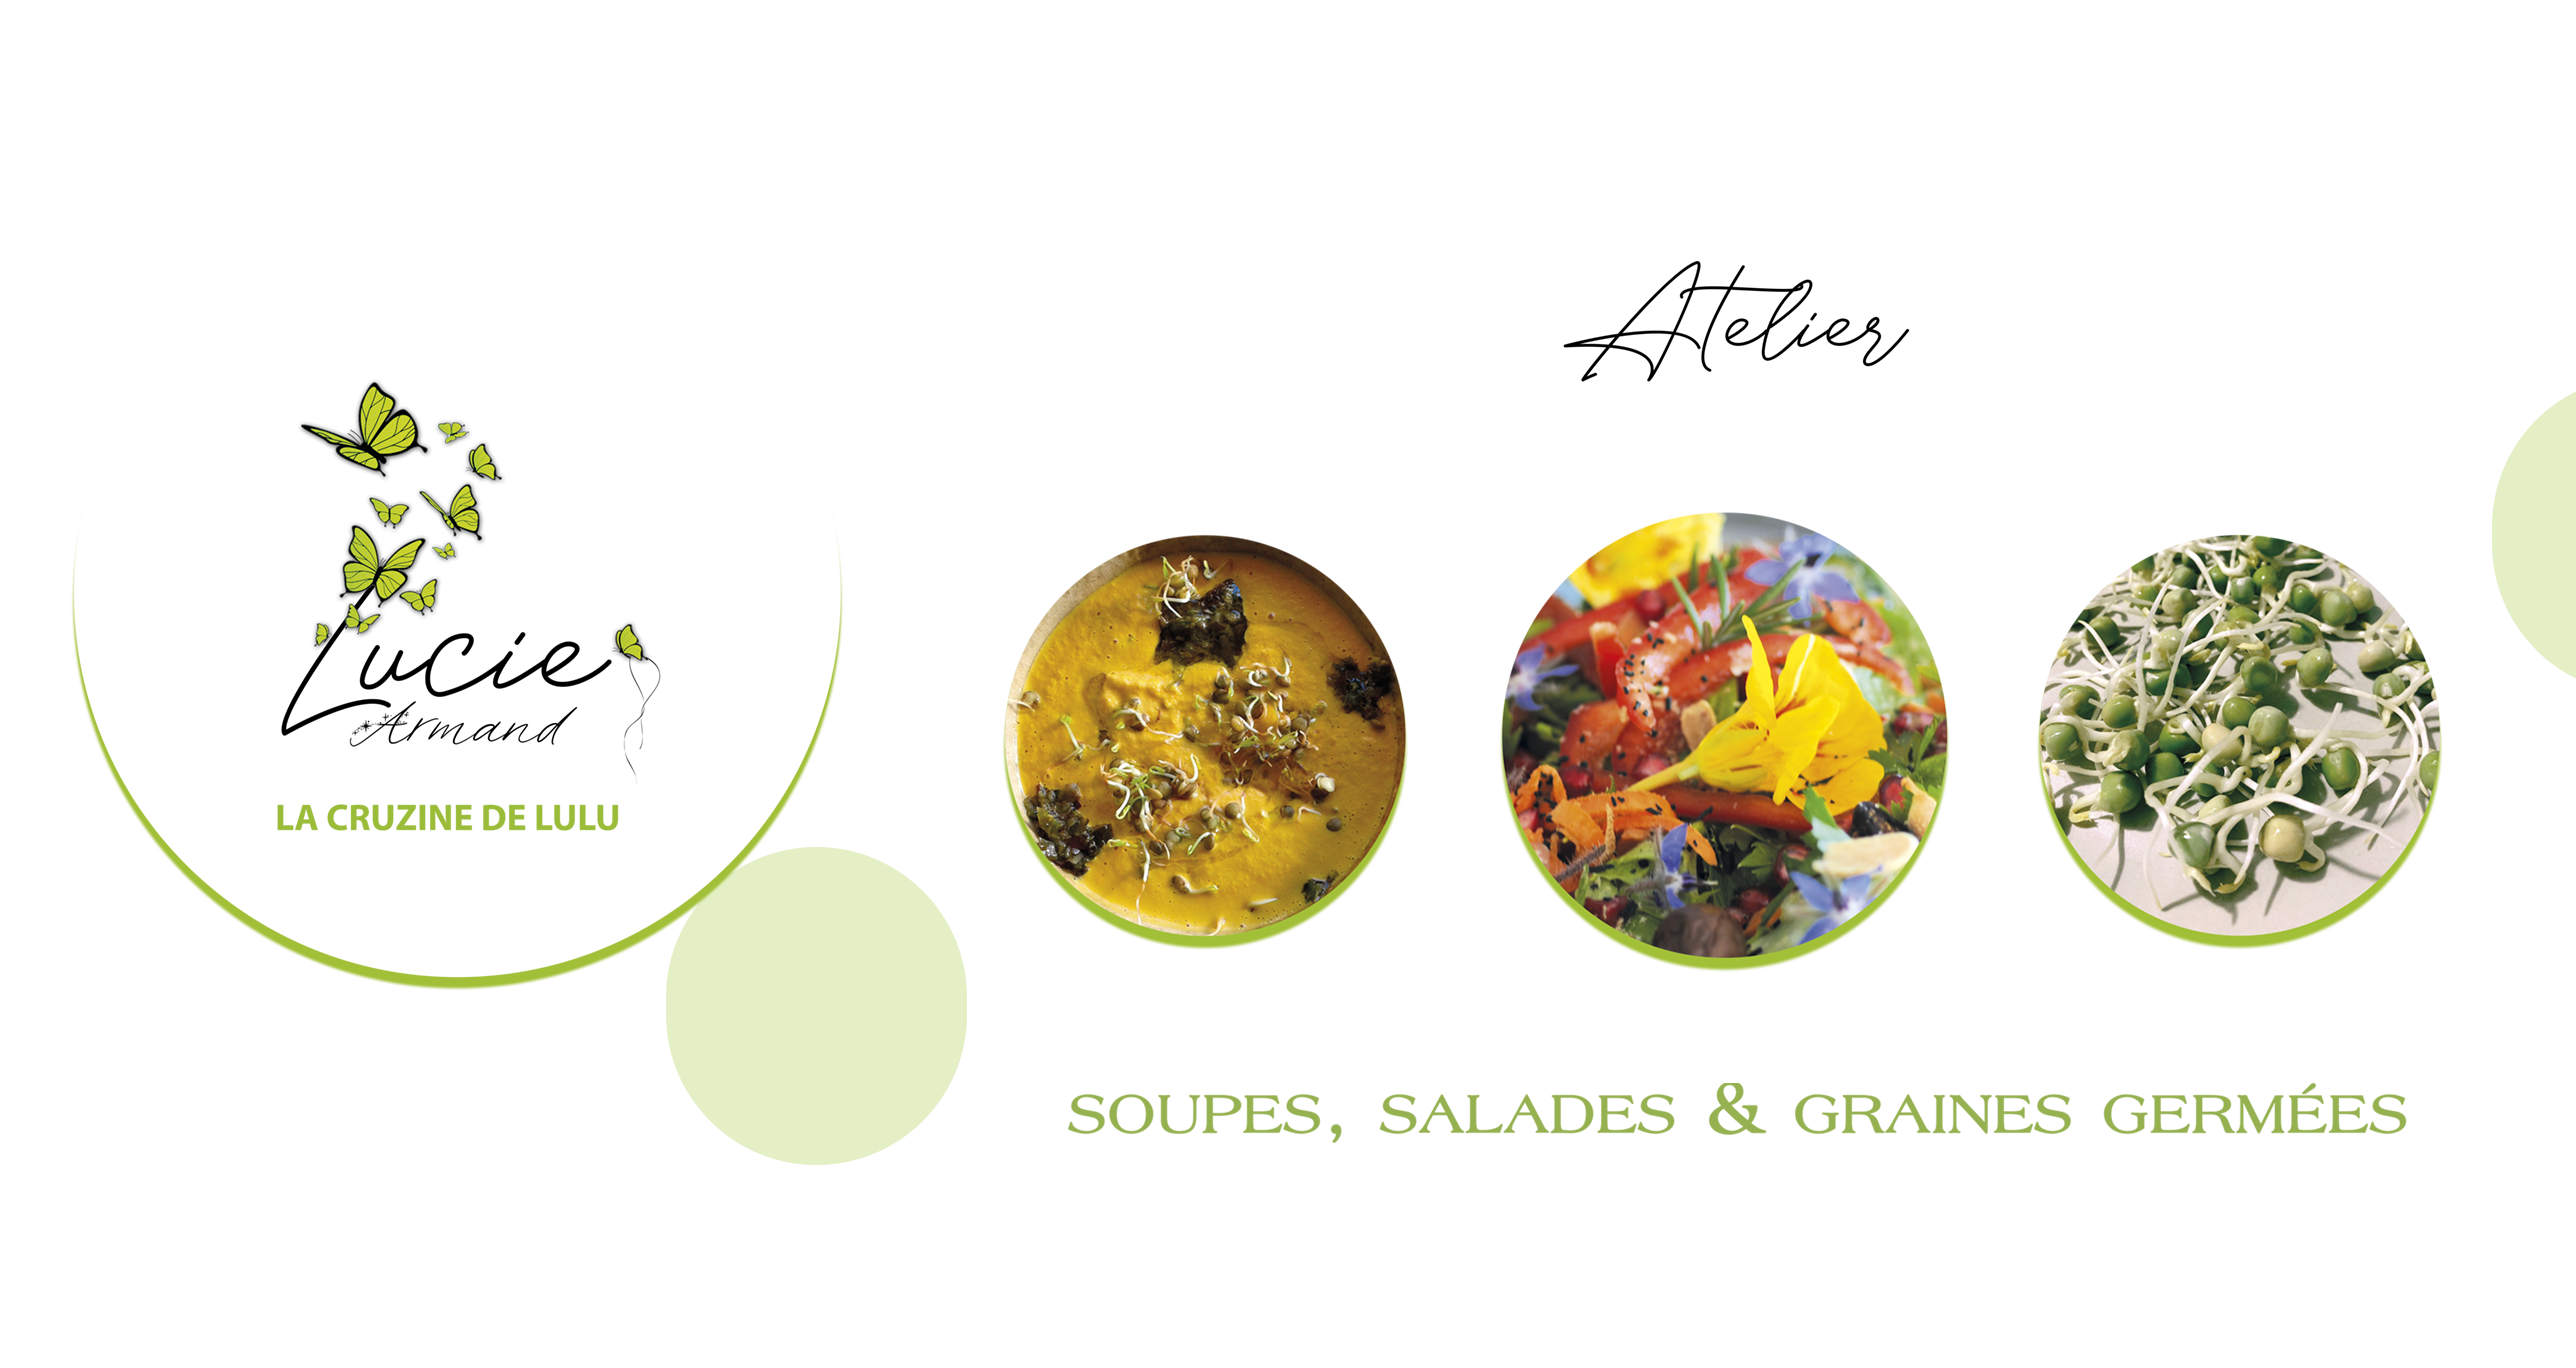 Atelier Soupes, Salades et Graines Germées